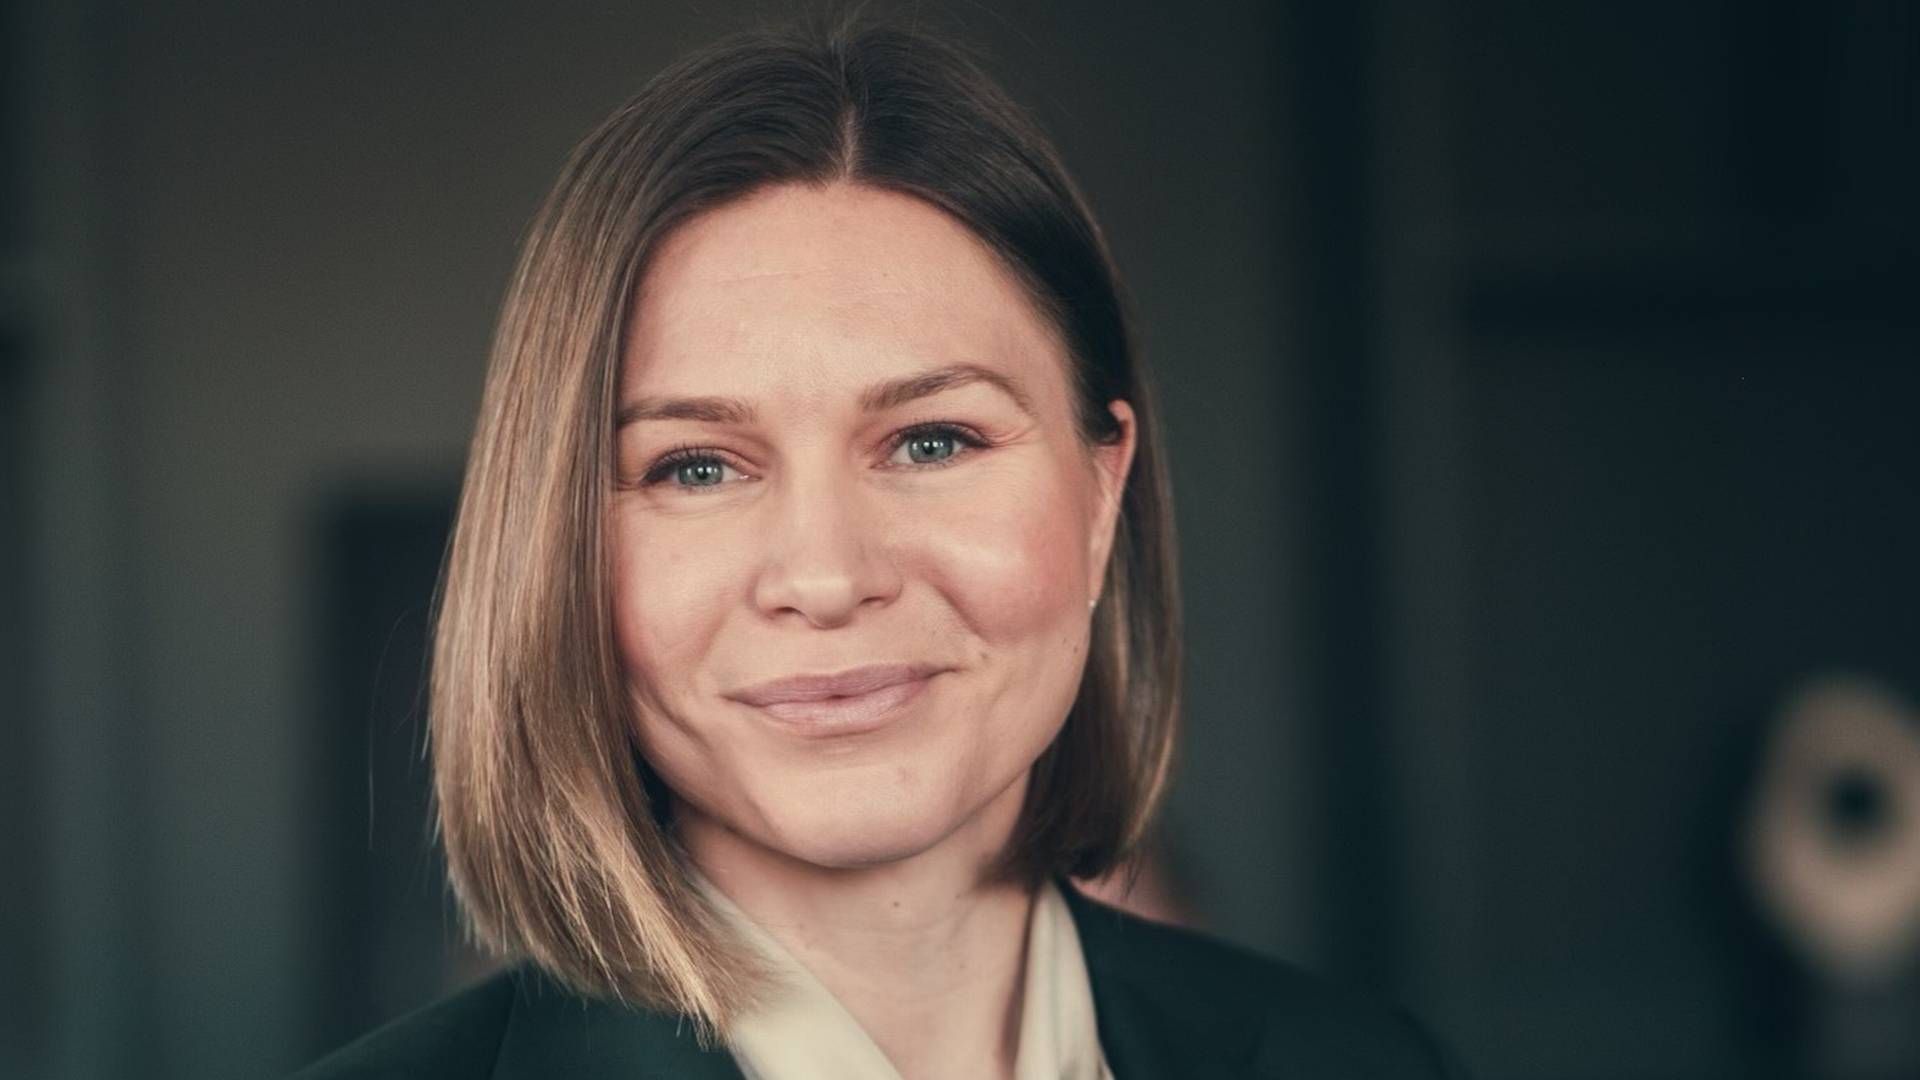 FORLATER BONAVA: Når Matilda Vinje blir ny Schage Eiendom-sjef, forlater hun også jobben som regiondirektør for Oslo hos Bonava. | Foto: Bård Gundersen/Gundersenogmeg